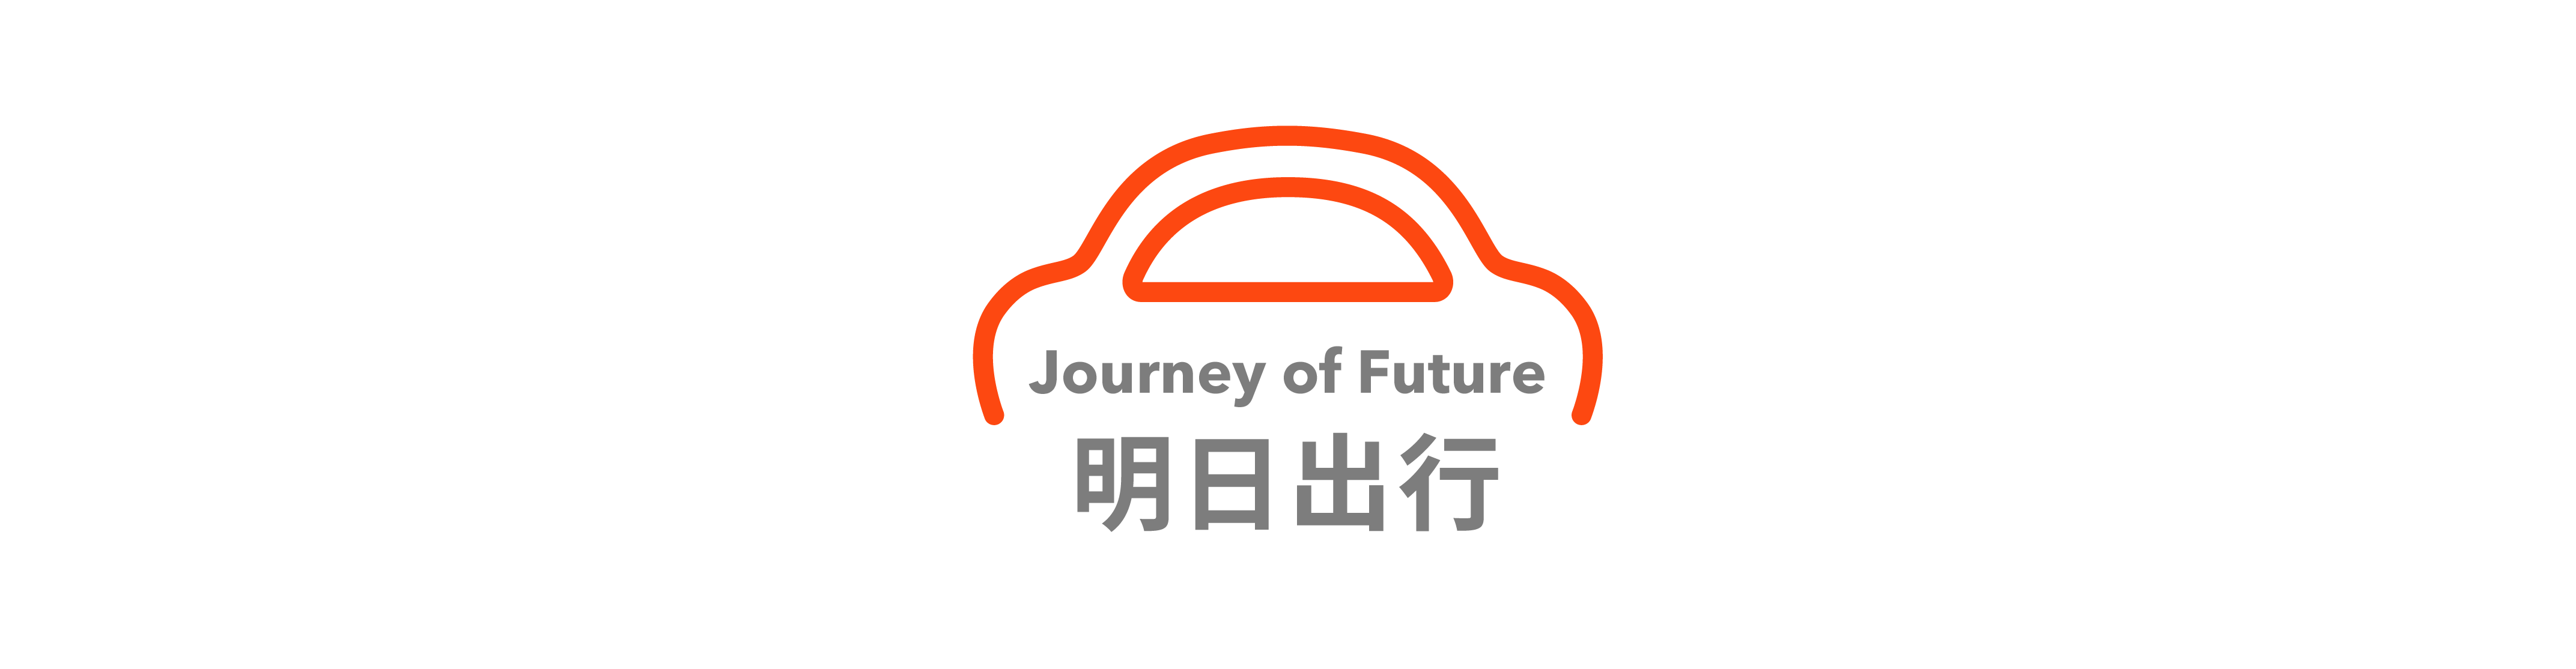 Dong Che Daily｜Huawei verwendet den Slogan „HUAWEI Asks the World“ / Führungskräfte von Chery sagen, dass Samstag ein Arbeitstag ist / Lamborghini veröffentlicht PHEV-System - 44